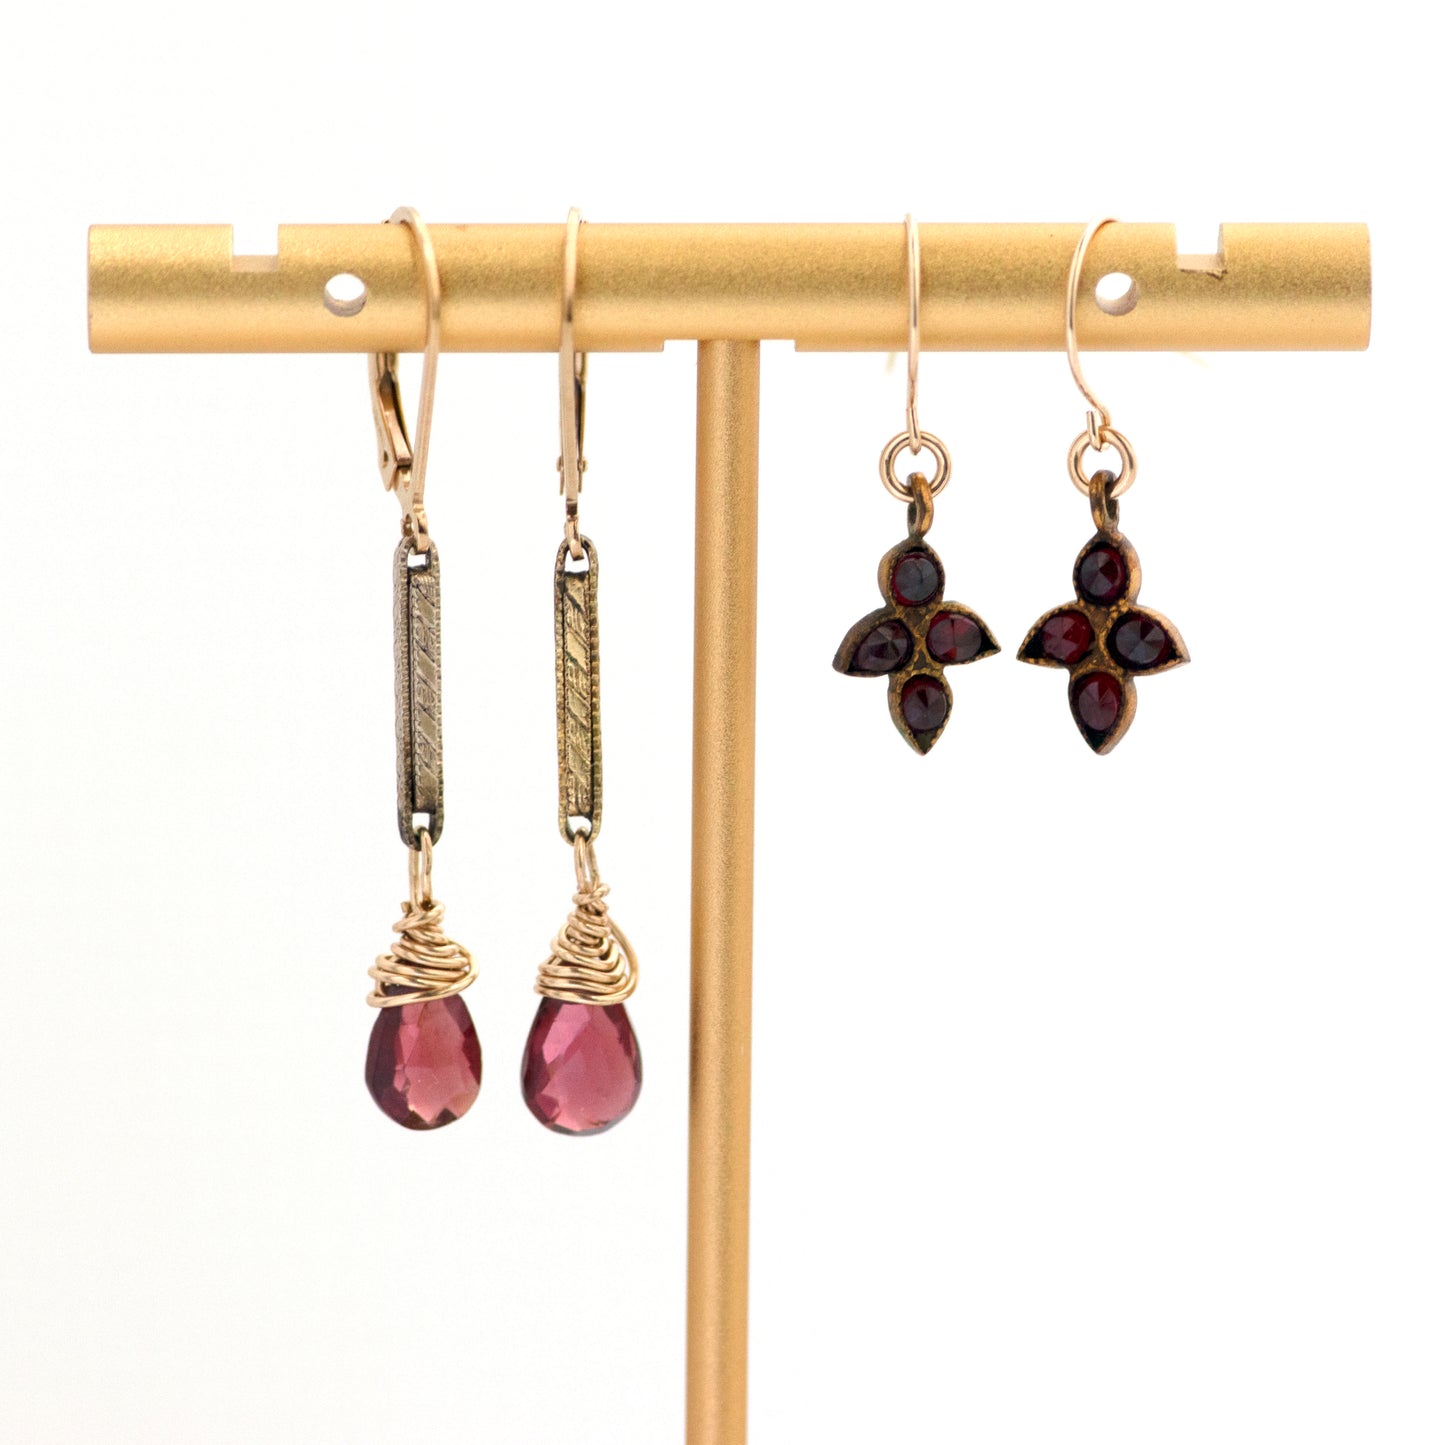 watch chain link and garnet drop earrings PLUS Antique Bohemian Garnet Earrings